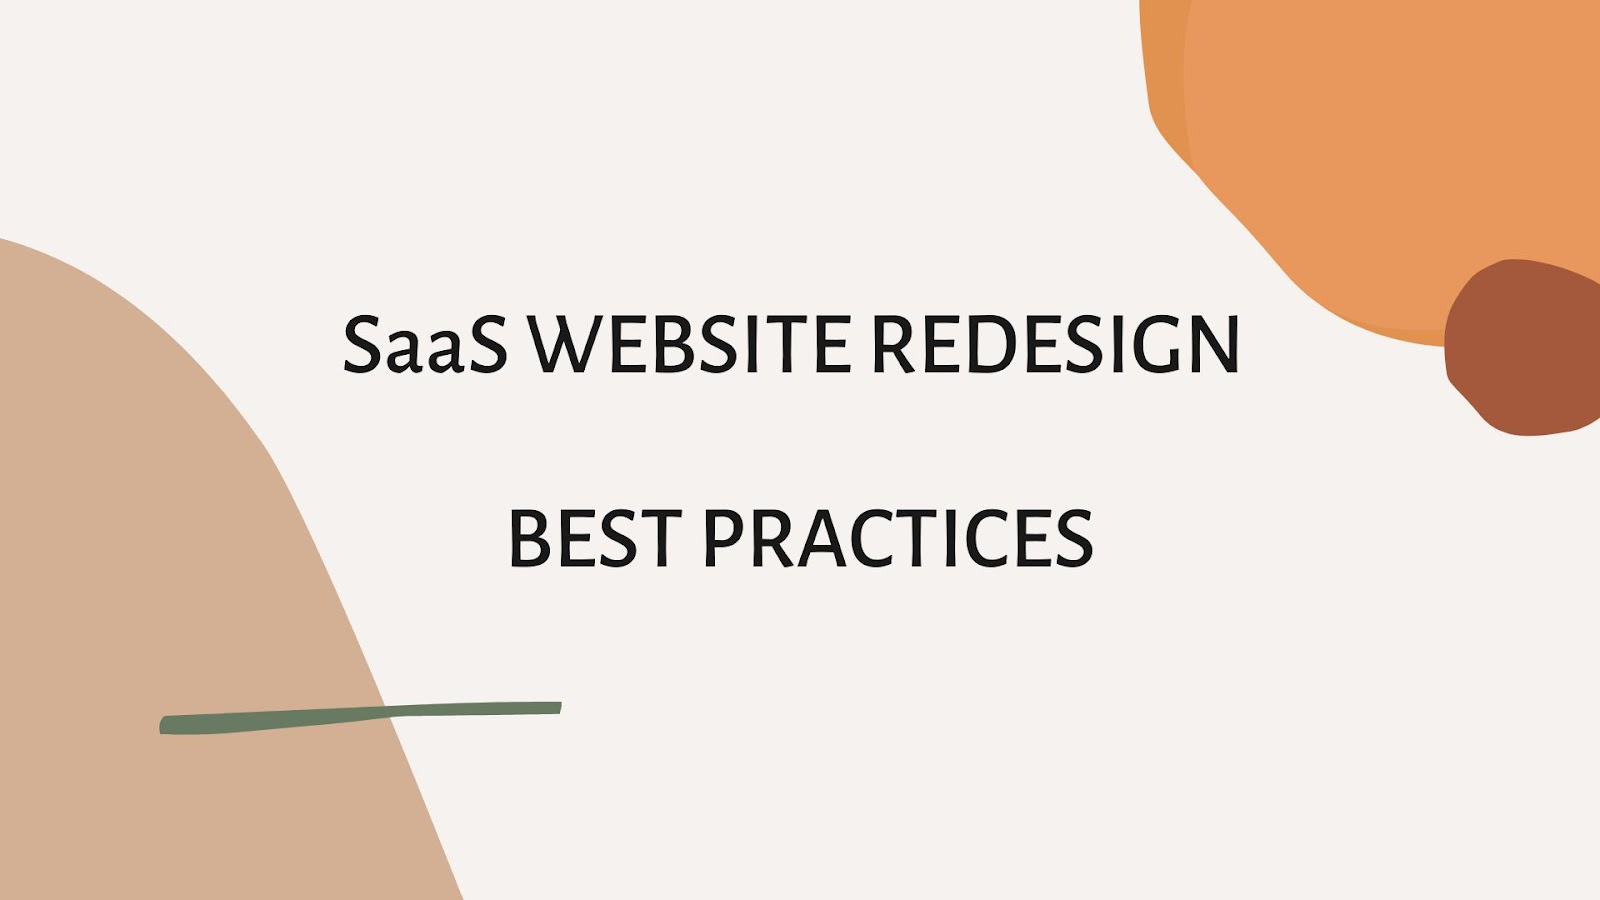 SaaS website redesign: best practices